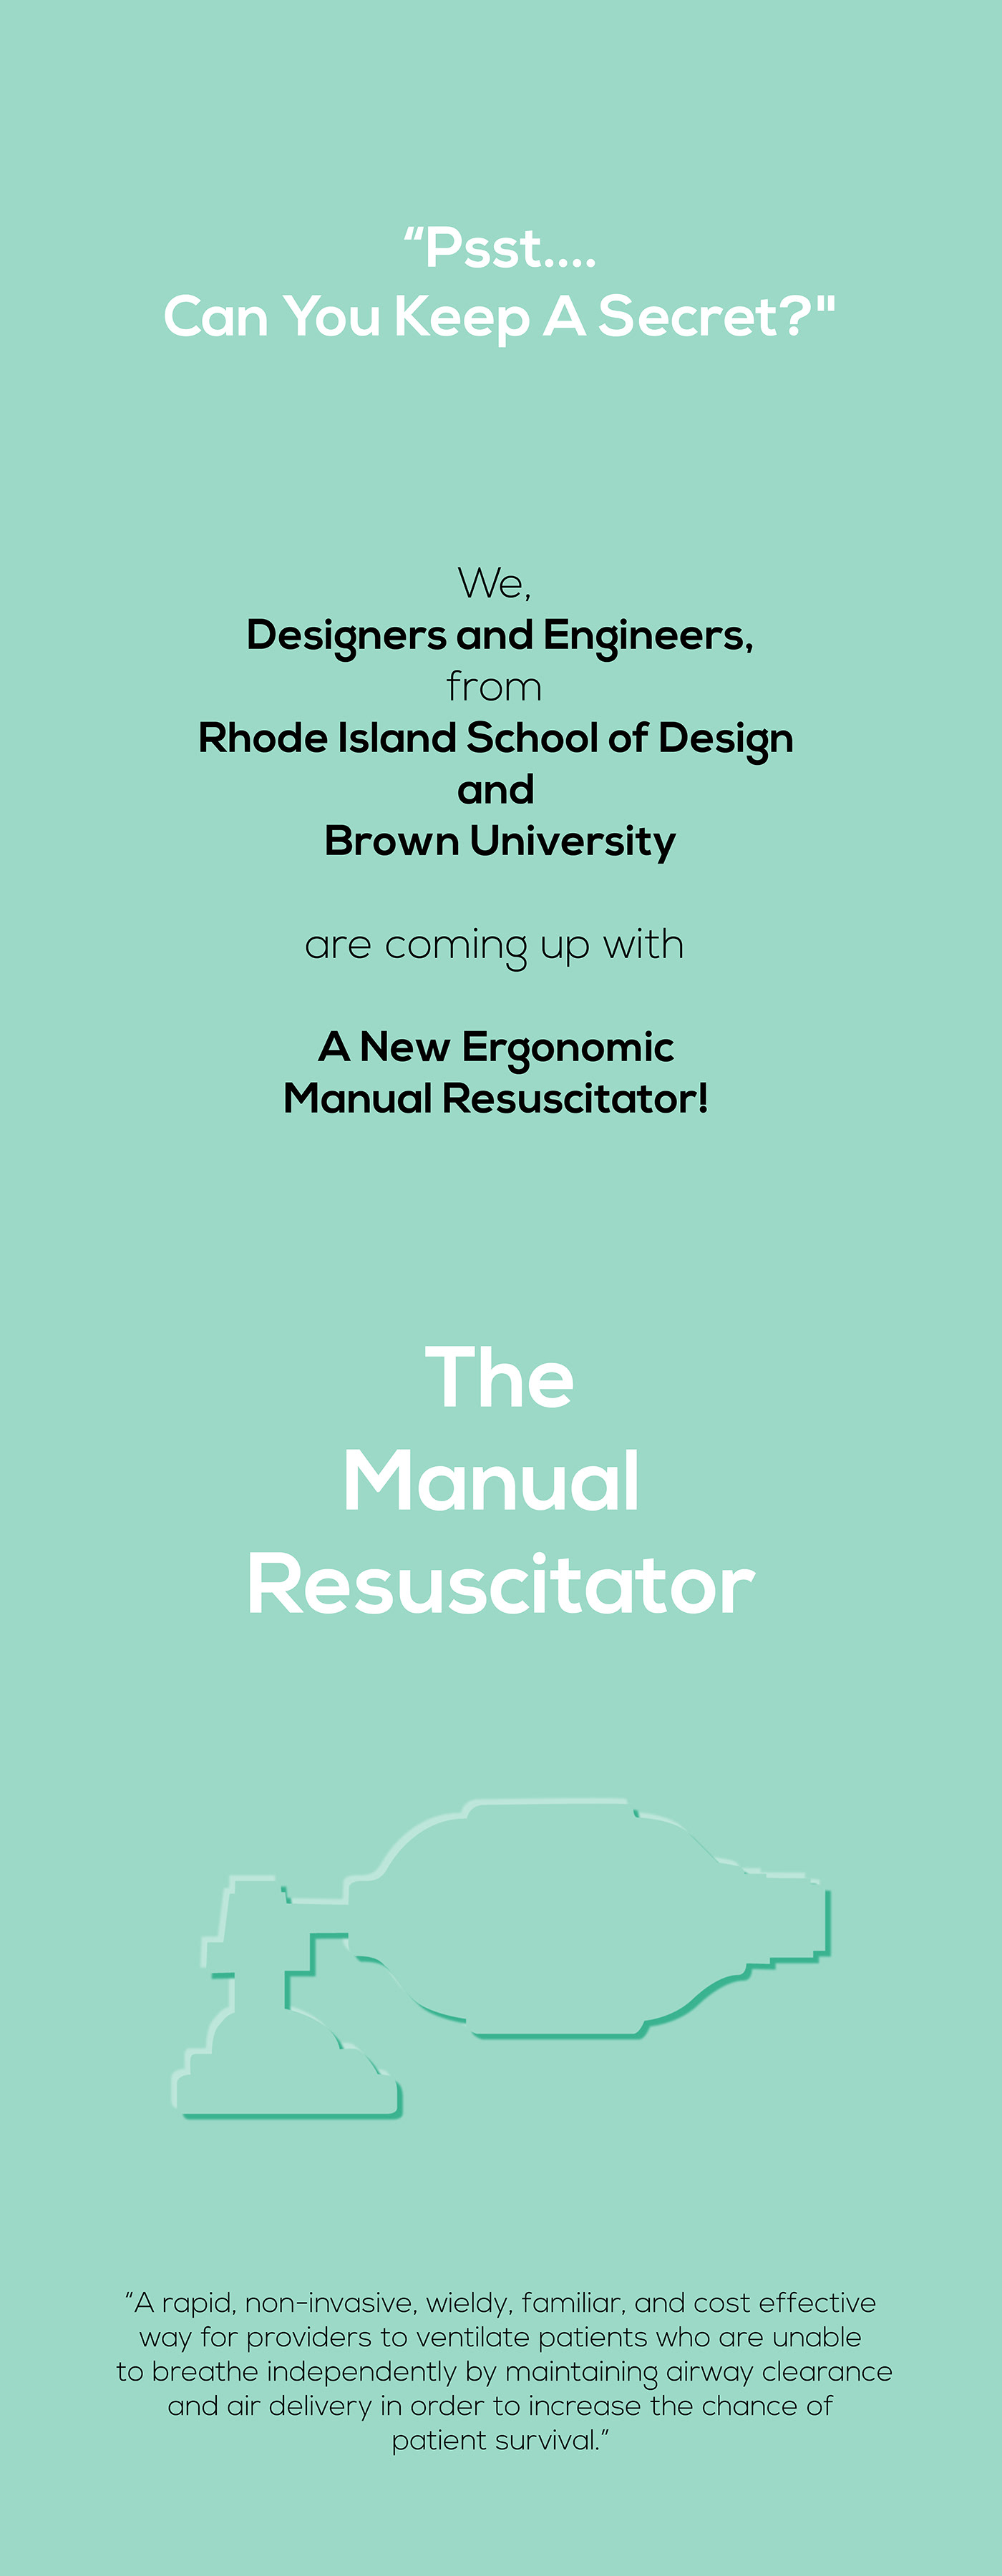 Manual Resuscitator